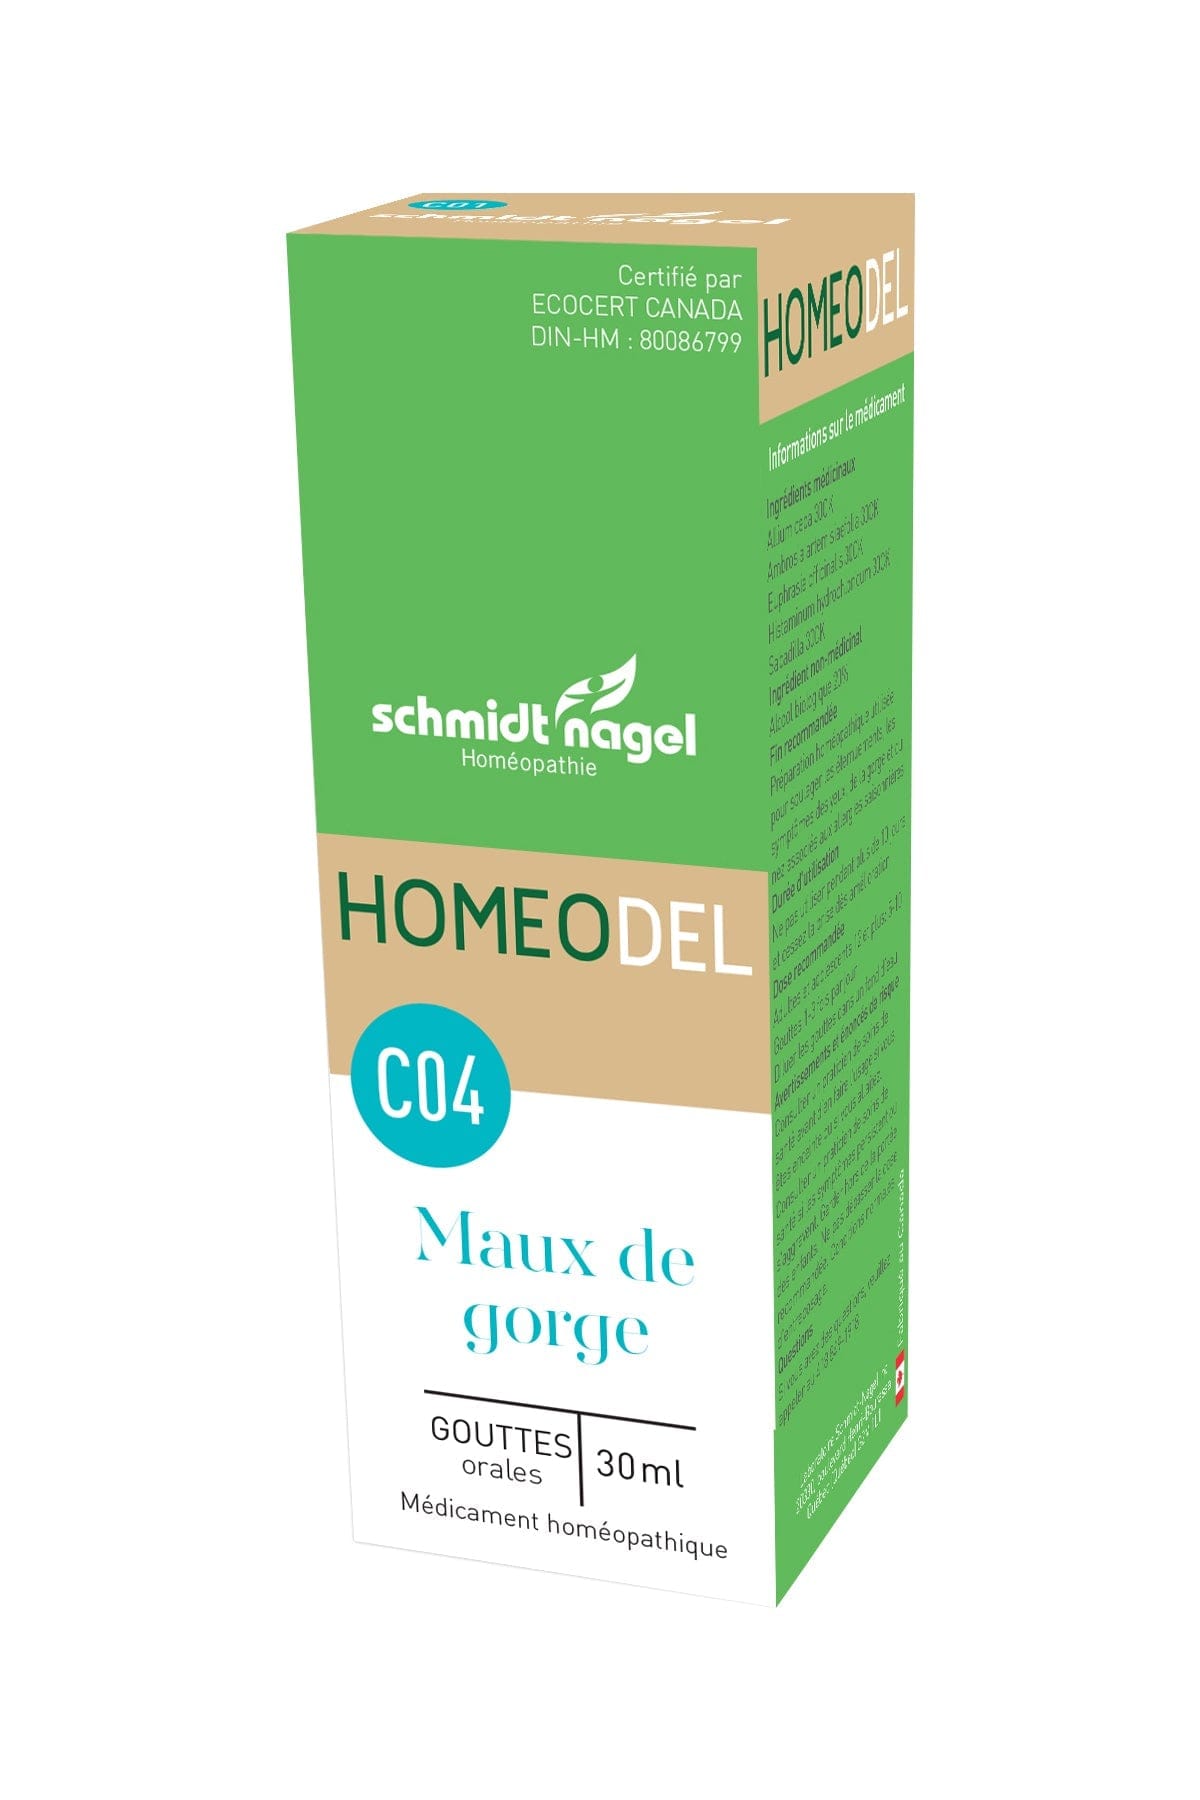 HOMEODEL Suppléments Homeodel C04(maux de gorge) 30ml